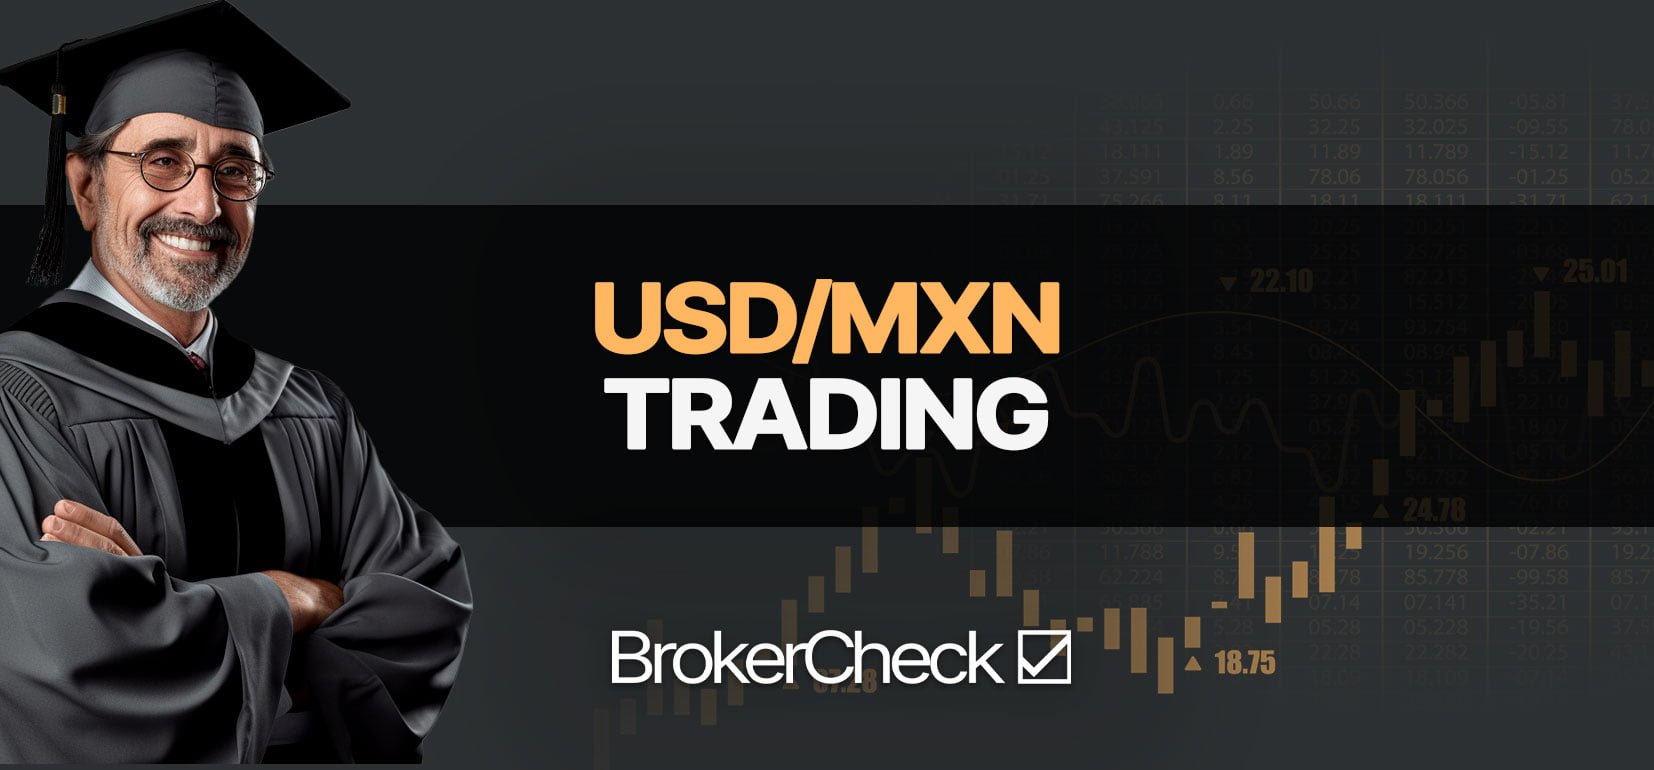 Πώς να Trade USD/MXN με επιτυχία